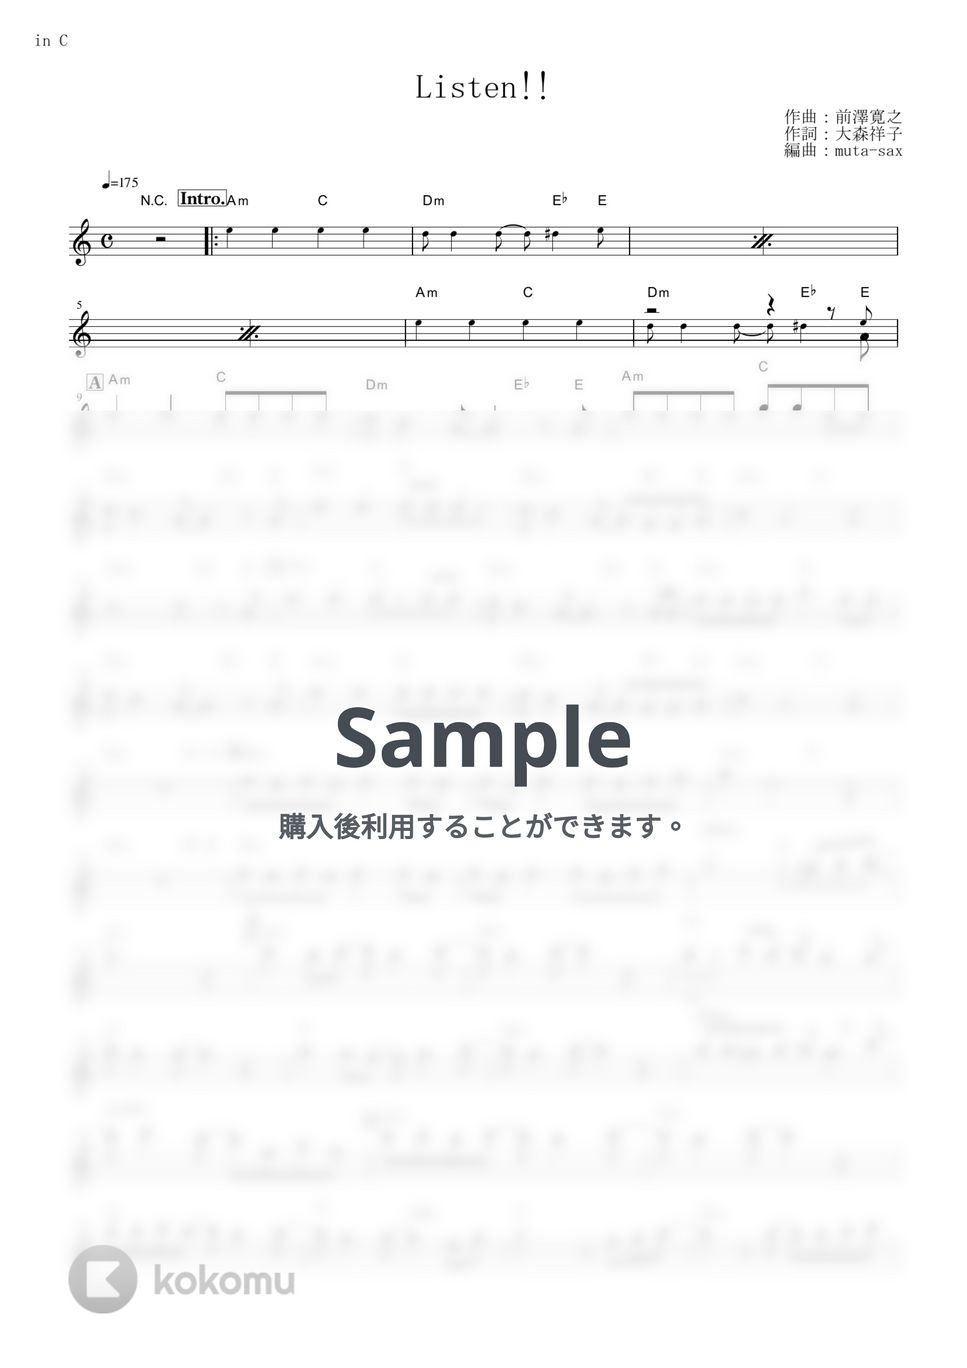 放課後ティータイム - Listen!! (『けいおん!!』 / in C) by muta-sax